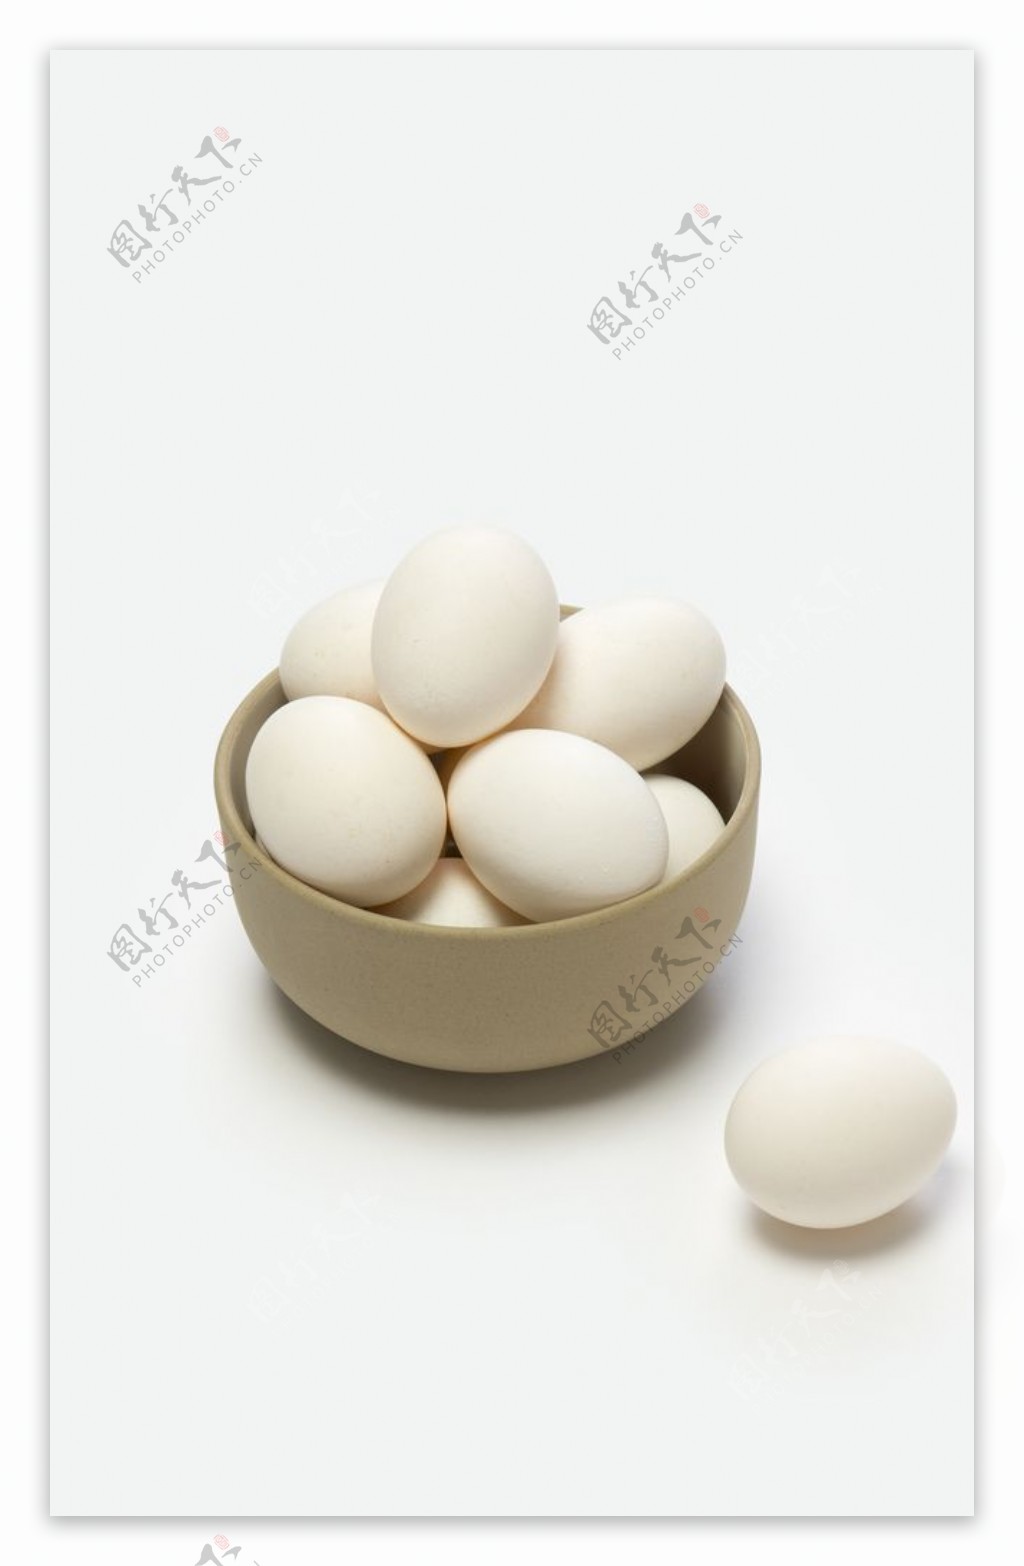 农产品鸡蛋